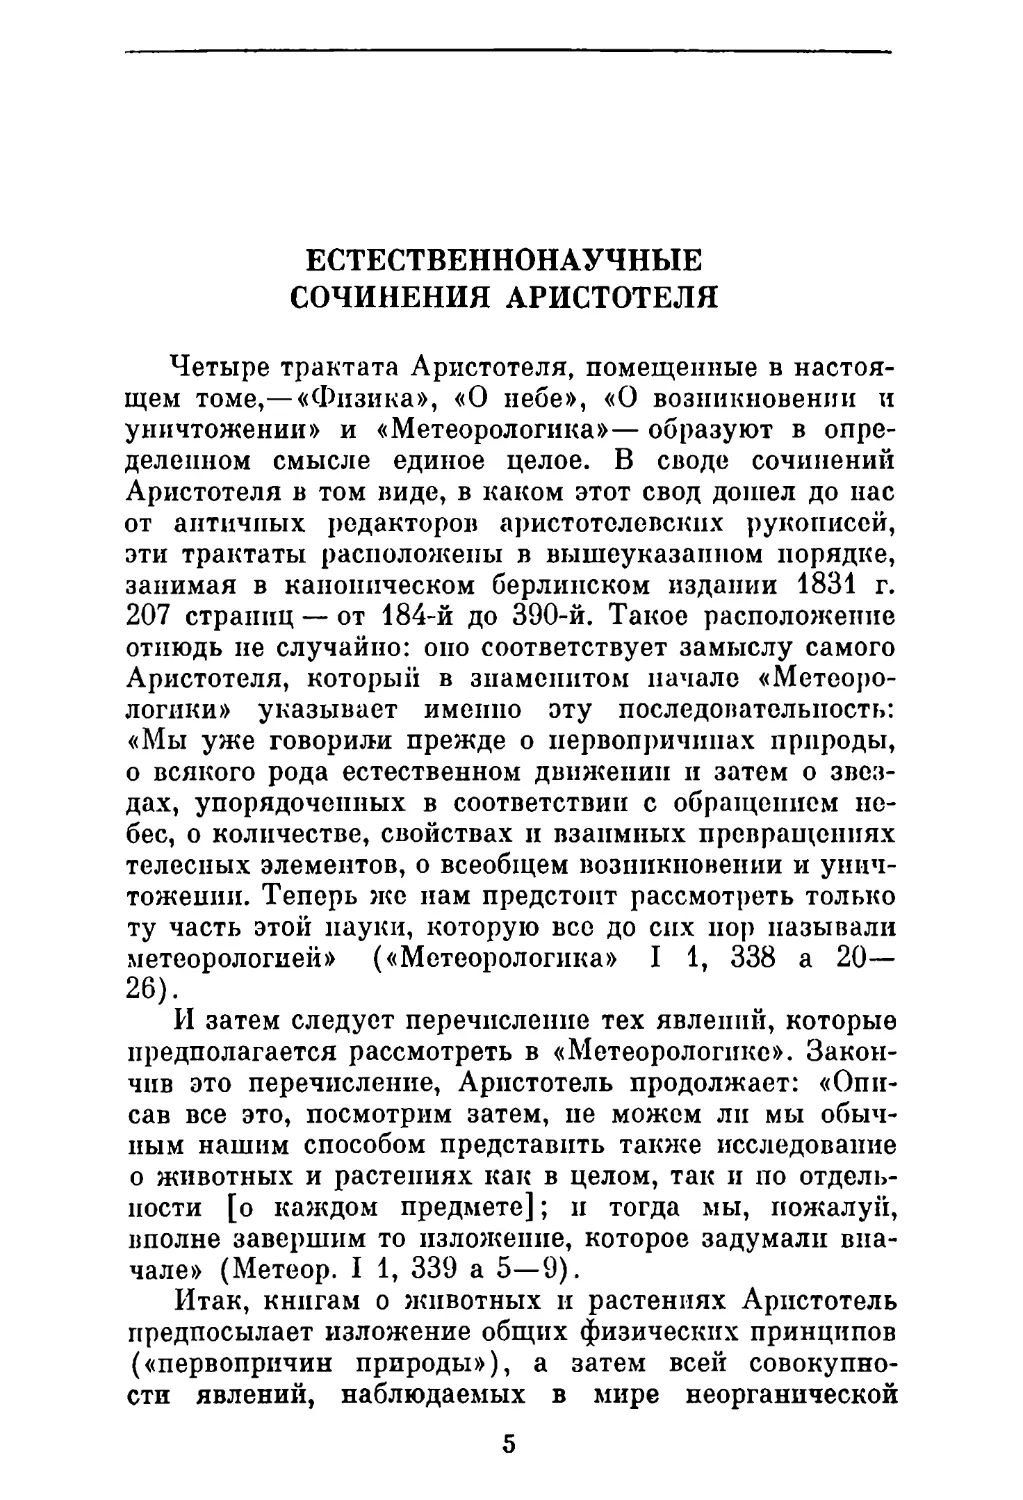 И. Д. Рожанский. Естественнонаучные сочинения Аристотеля